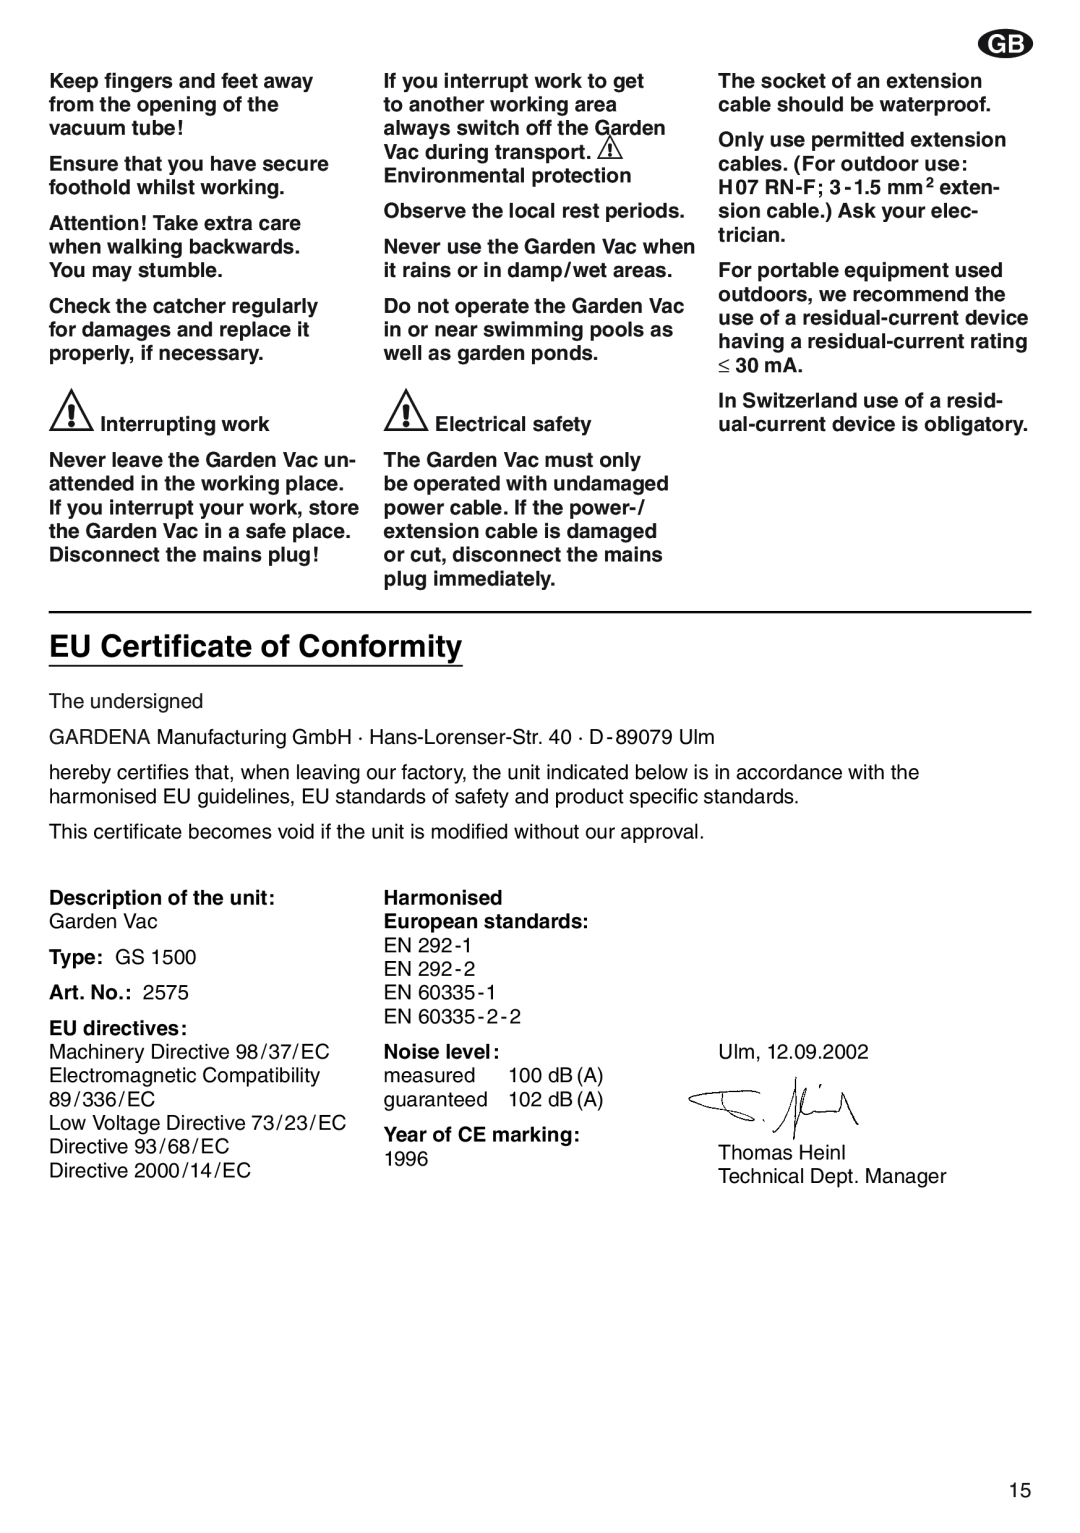 Gardena GS 1500 Art. 2575 manual EU Certificate of Conformity 